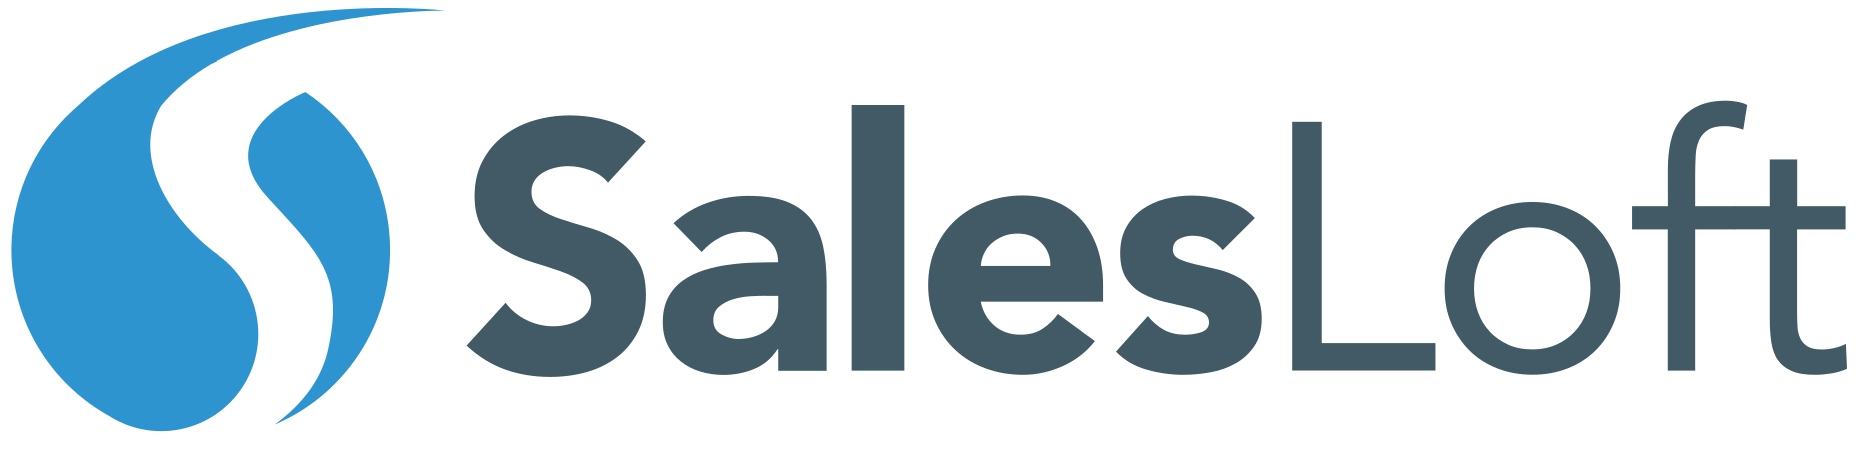 SalesLoft Logo - Manage Single Sign On